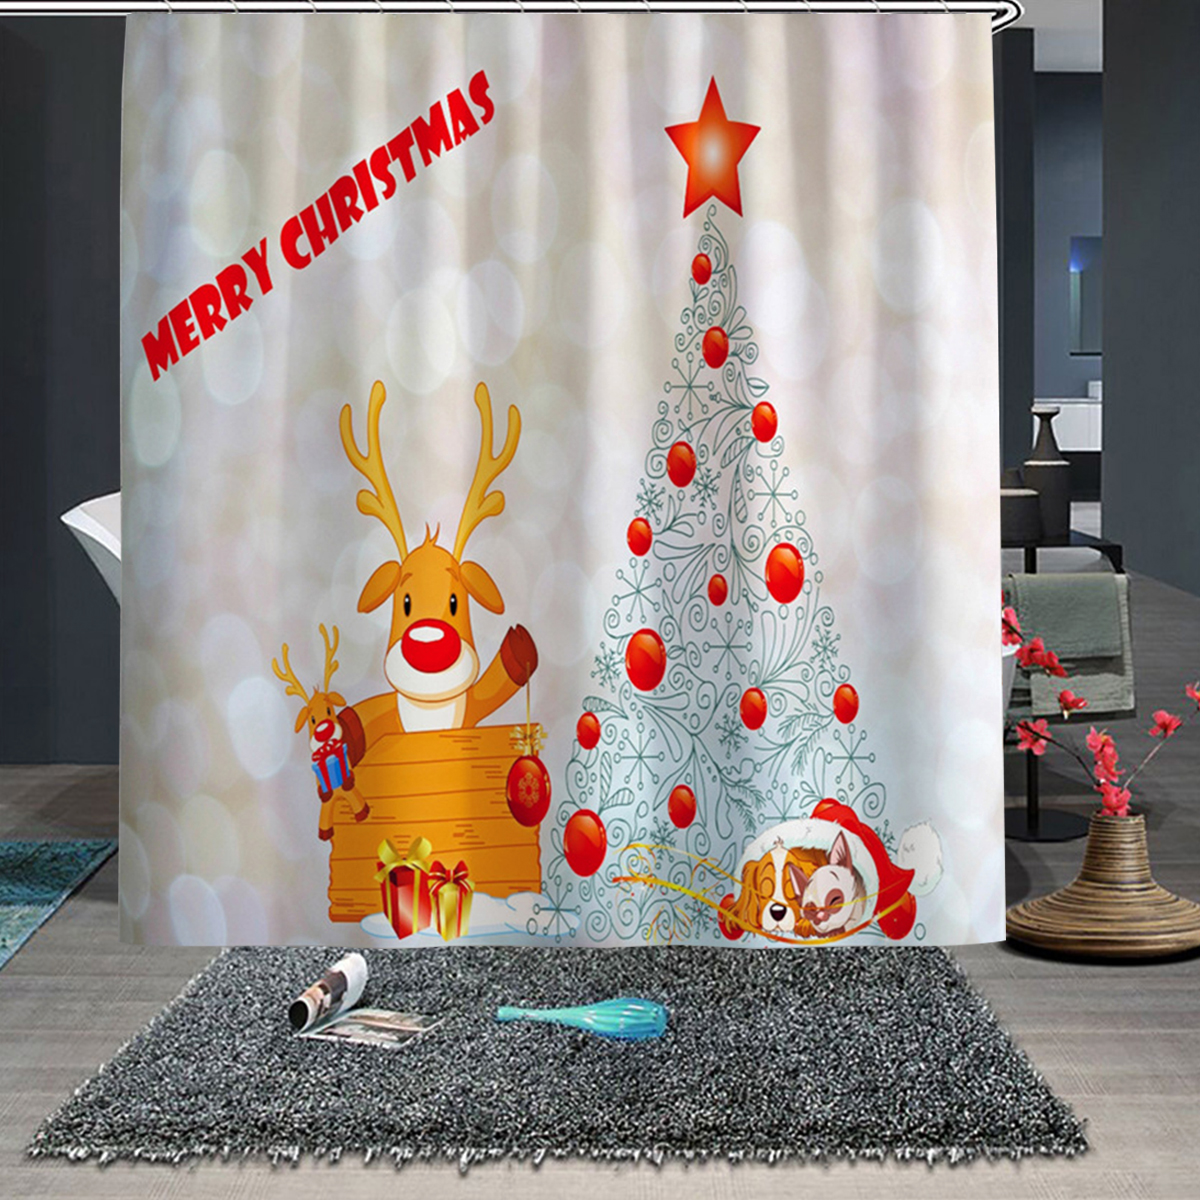 Christmas-Tree-Xmas-Bathroom-Shower-Curtain-Toilet-Cover-Rug-Floor-Bath-Mat-1818013-9